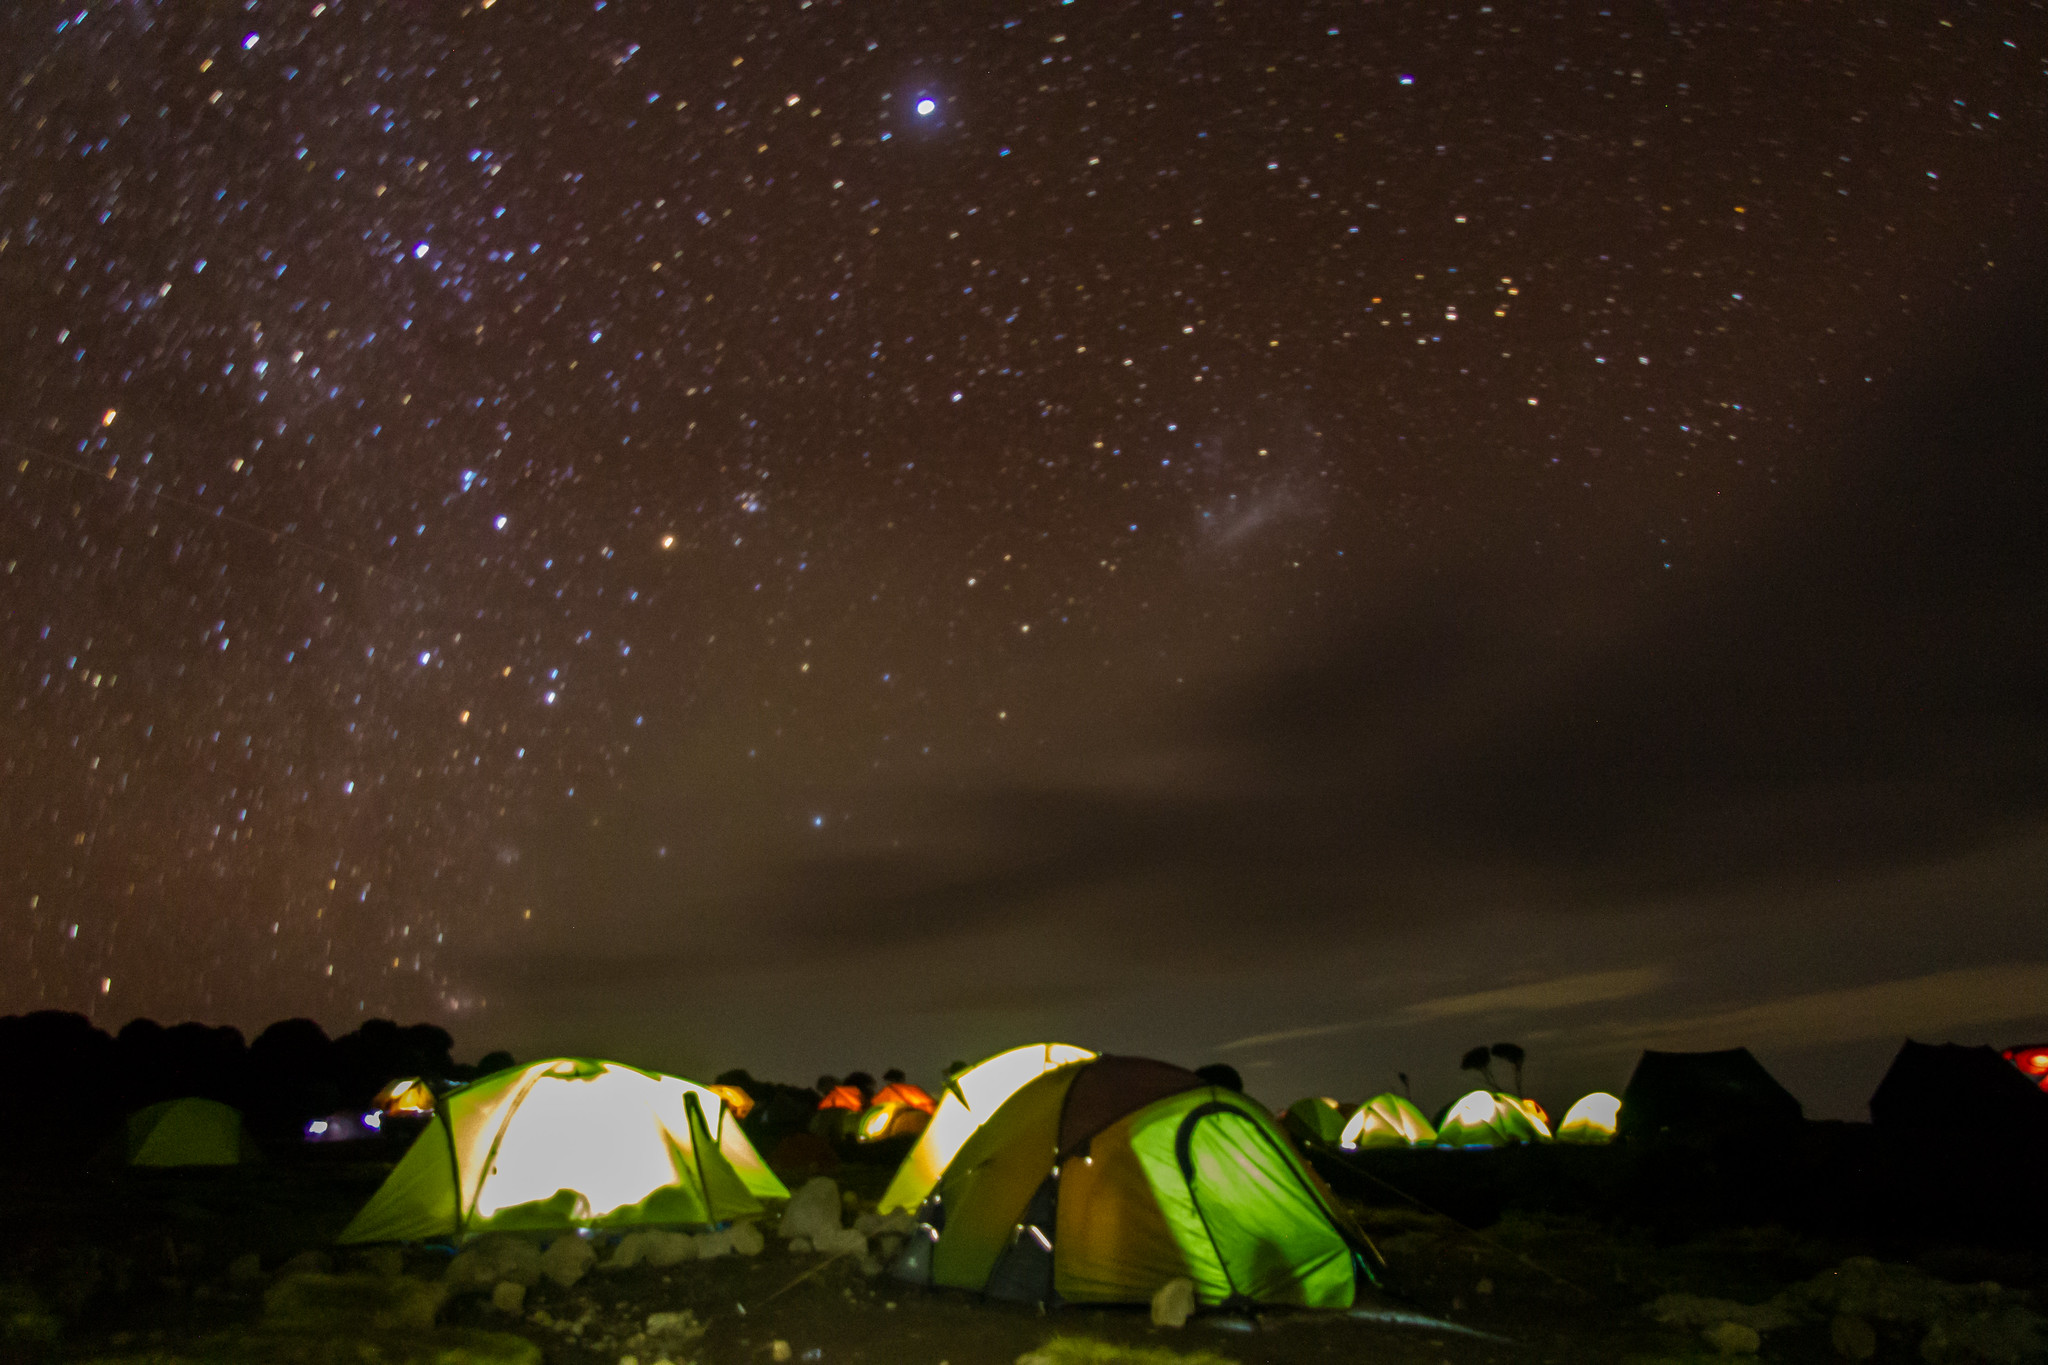 Shira 2 camp at night